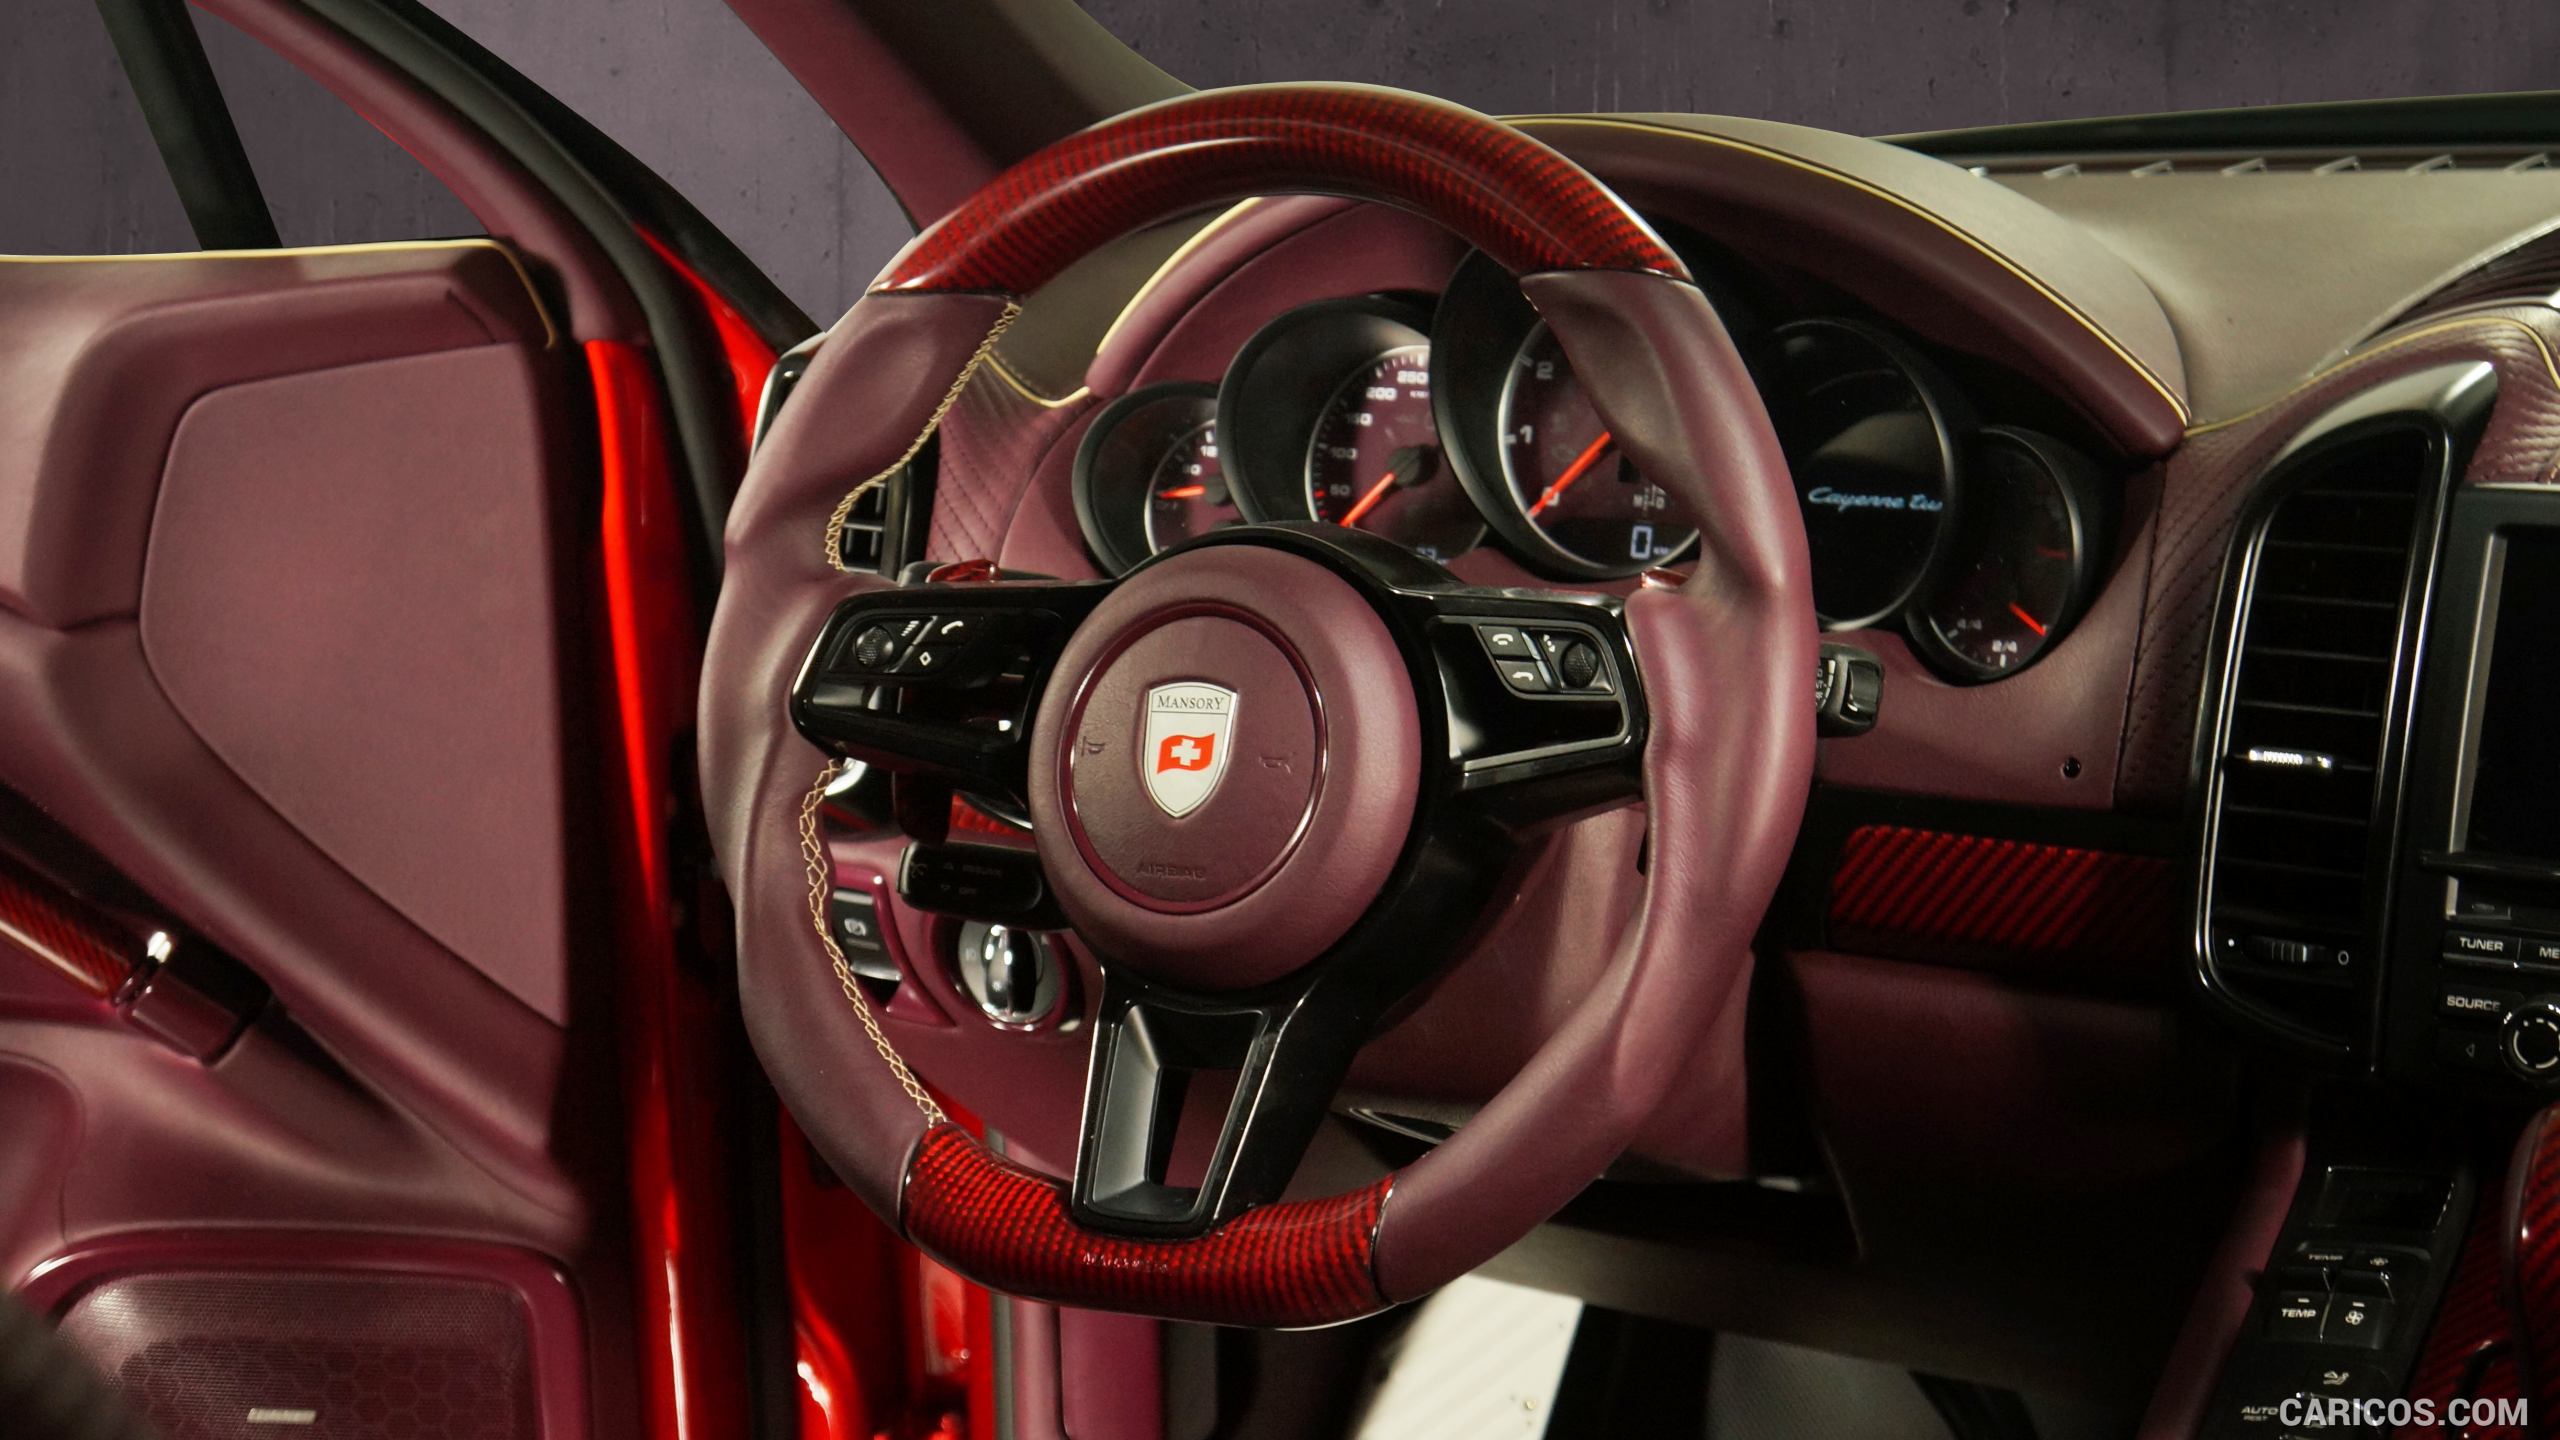 2015 Mansory Porsche Cayenne Turbo - Interior Steering Wheel, #5 of 15